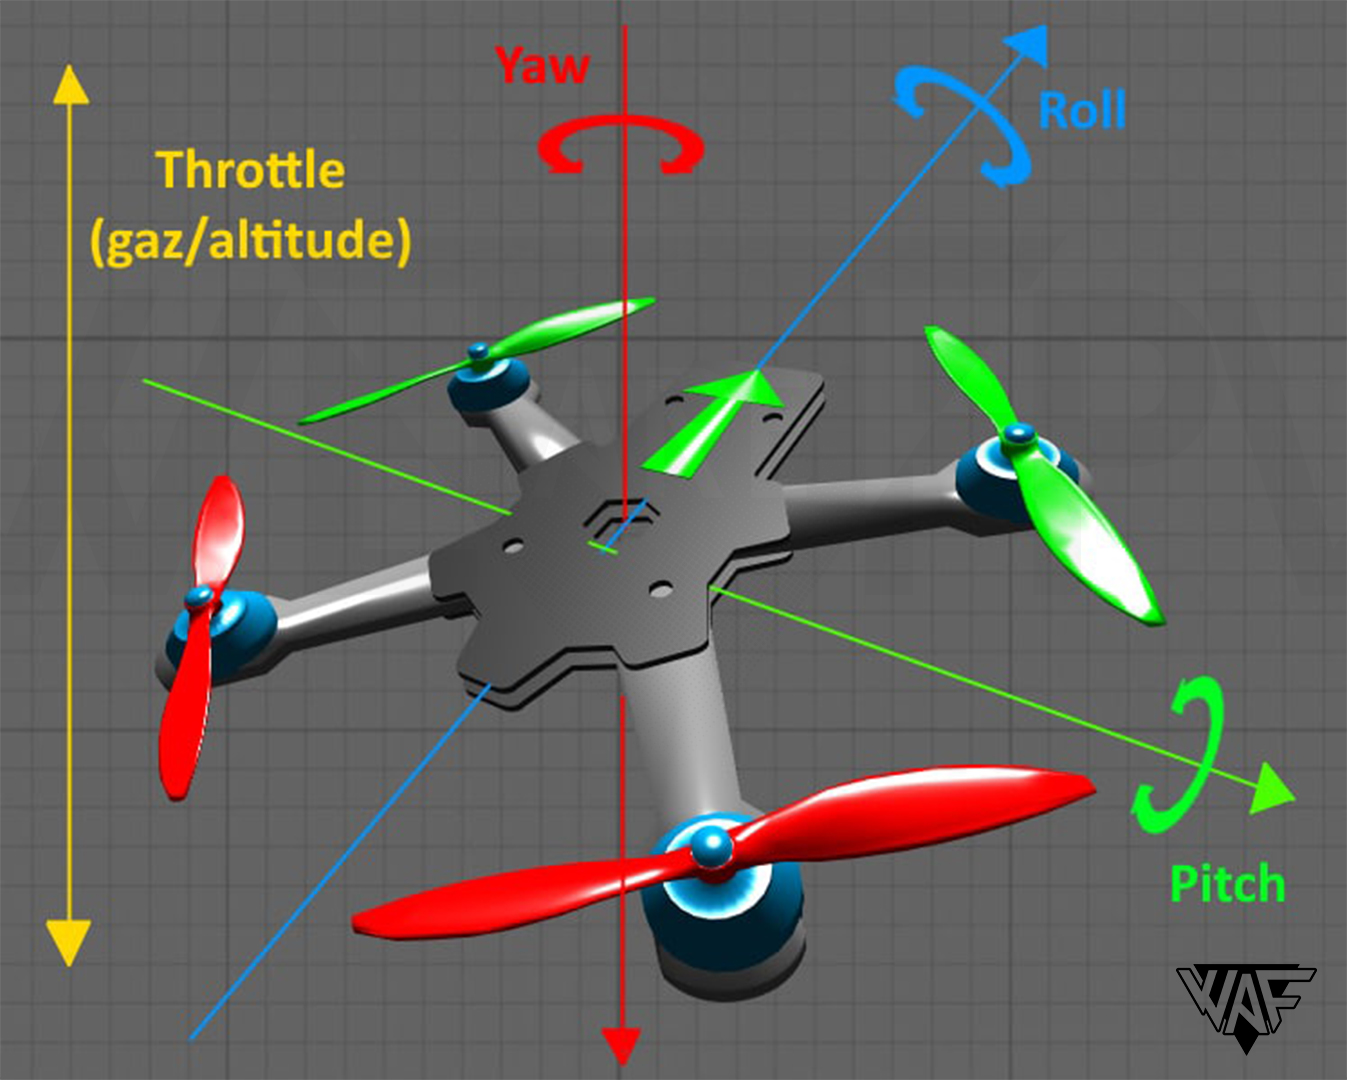 Comment choisir un drone pour débutant ?